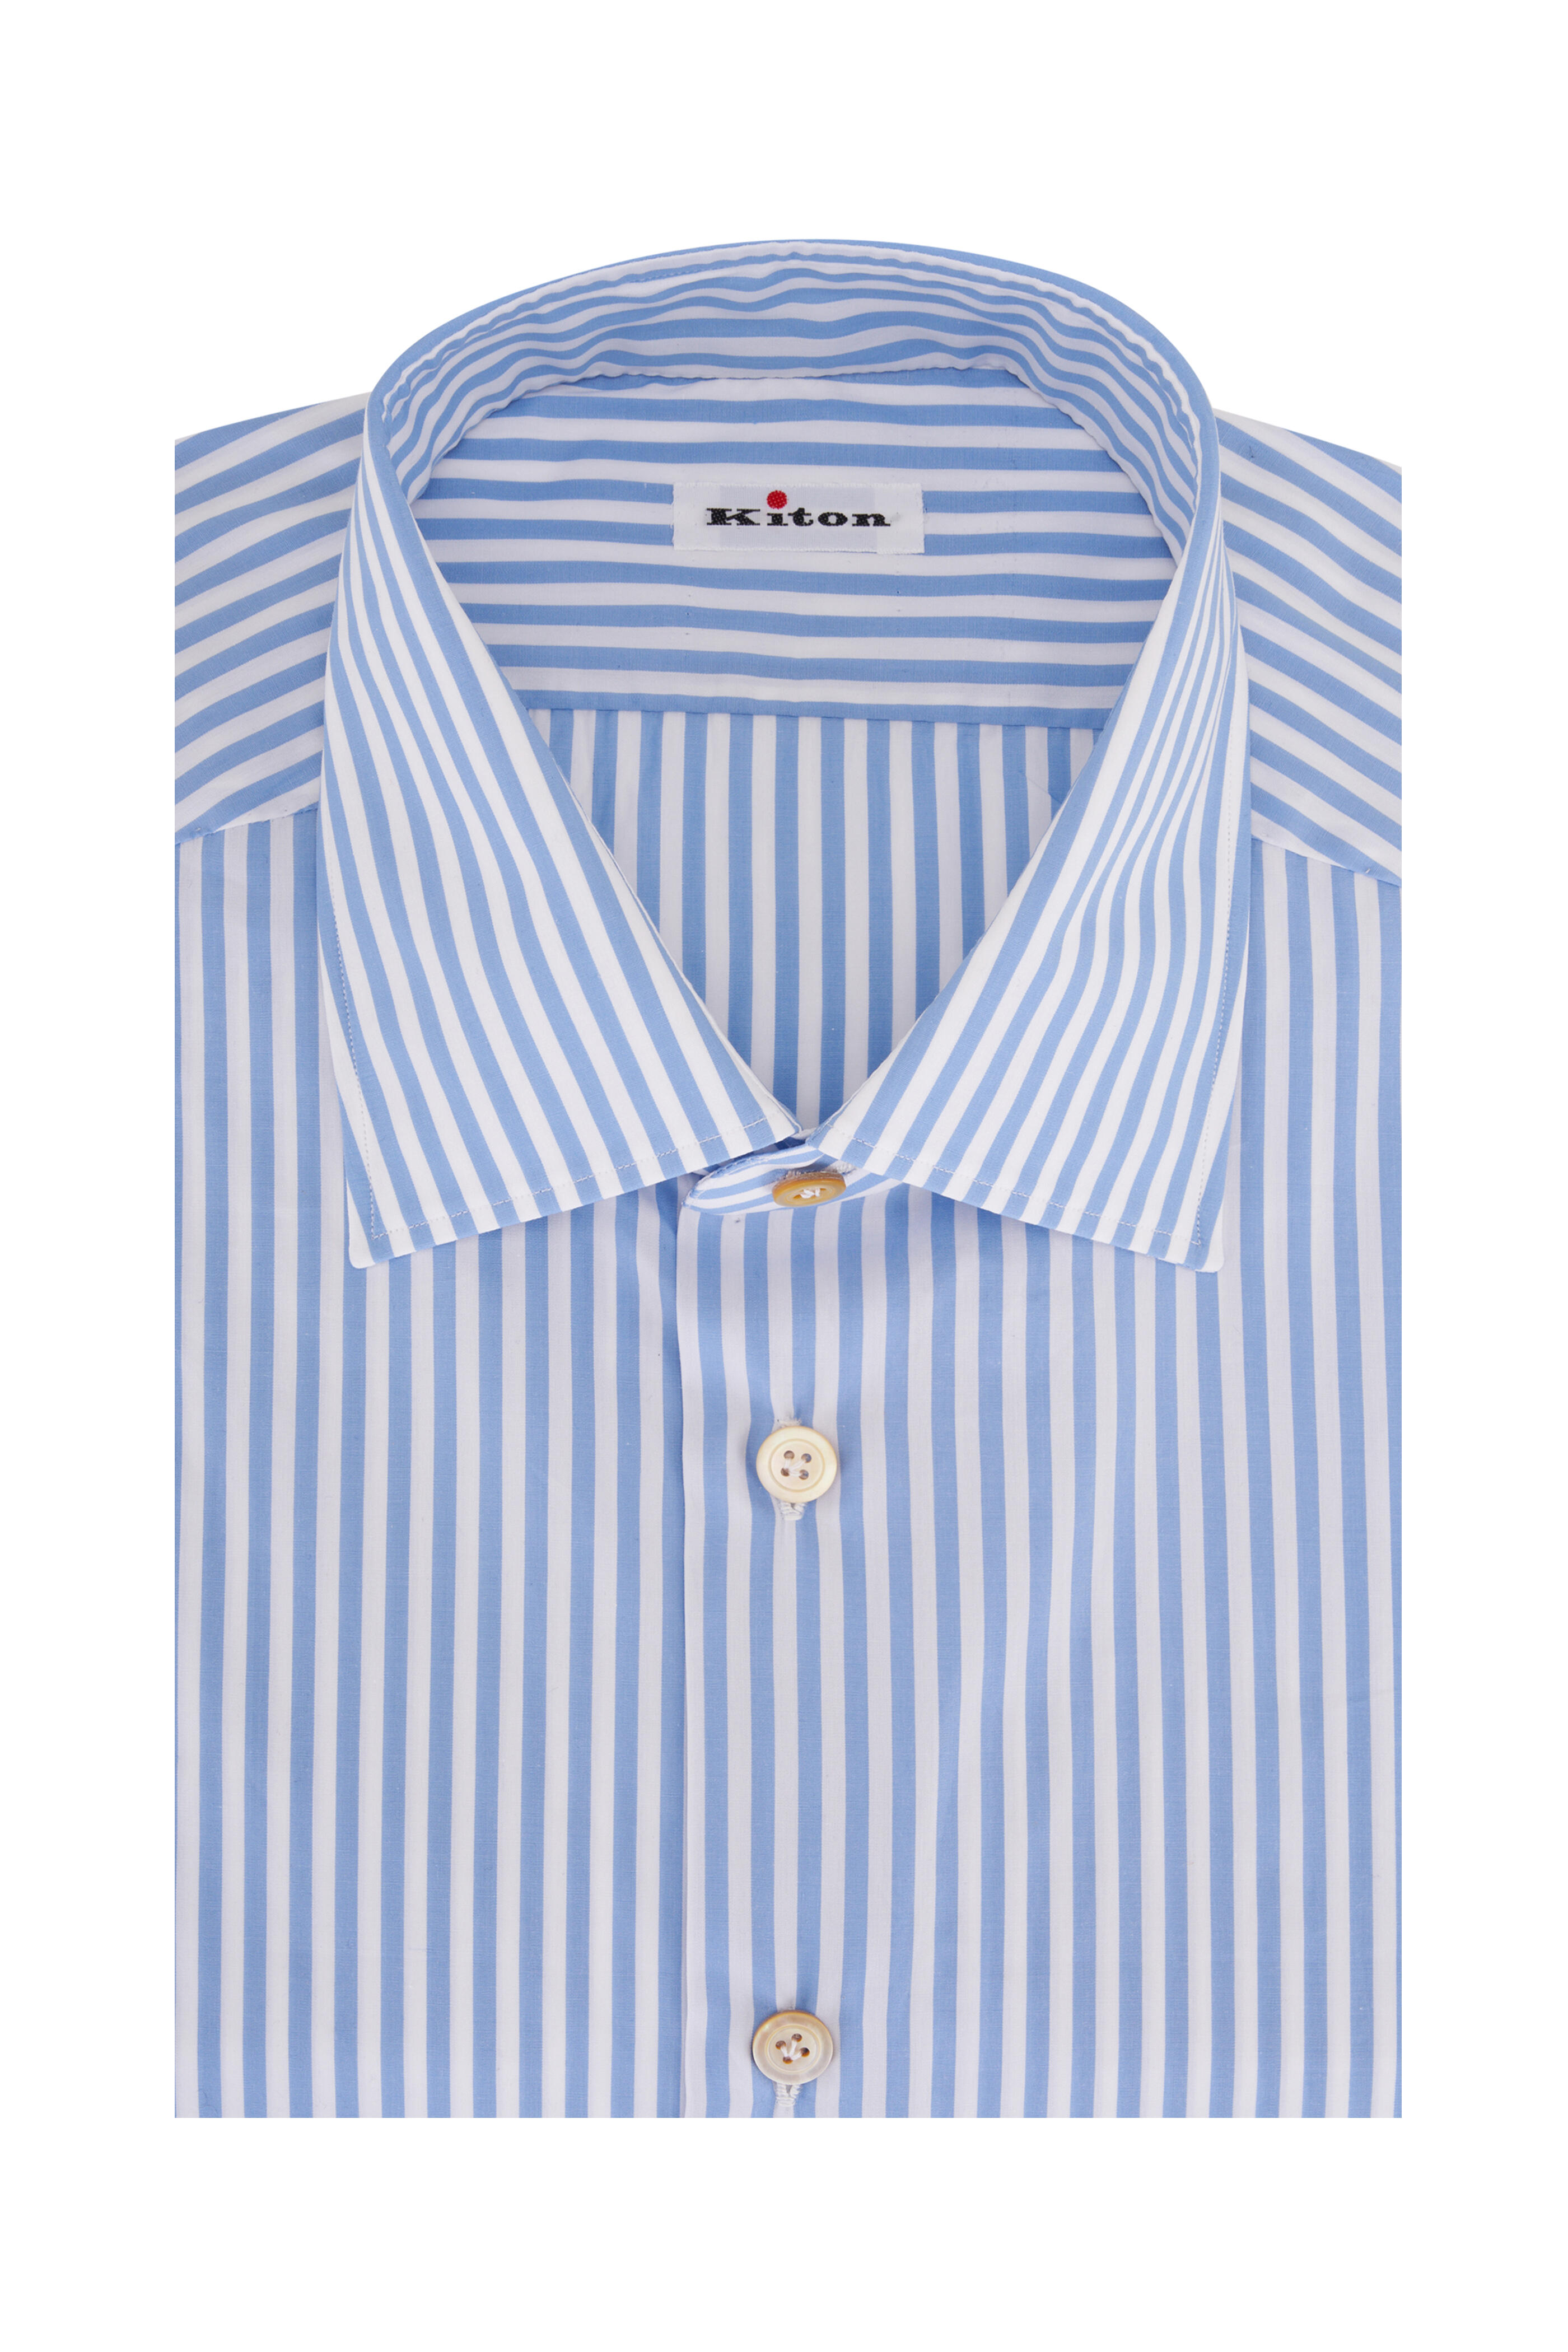 Kiton - Light Blue Bengal Stripe Cotton Dress Shirt